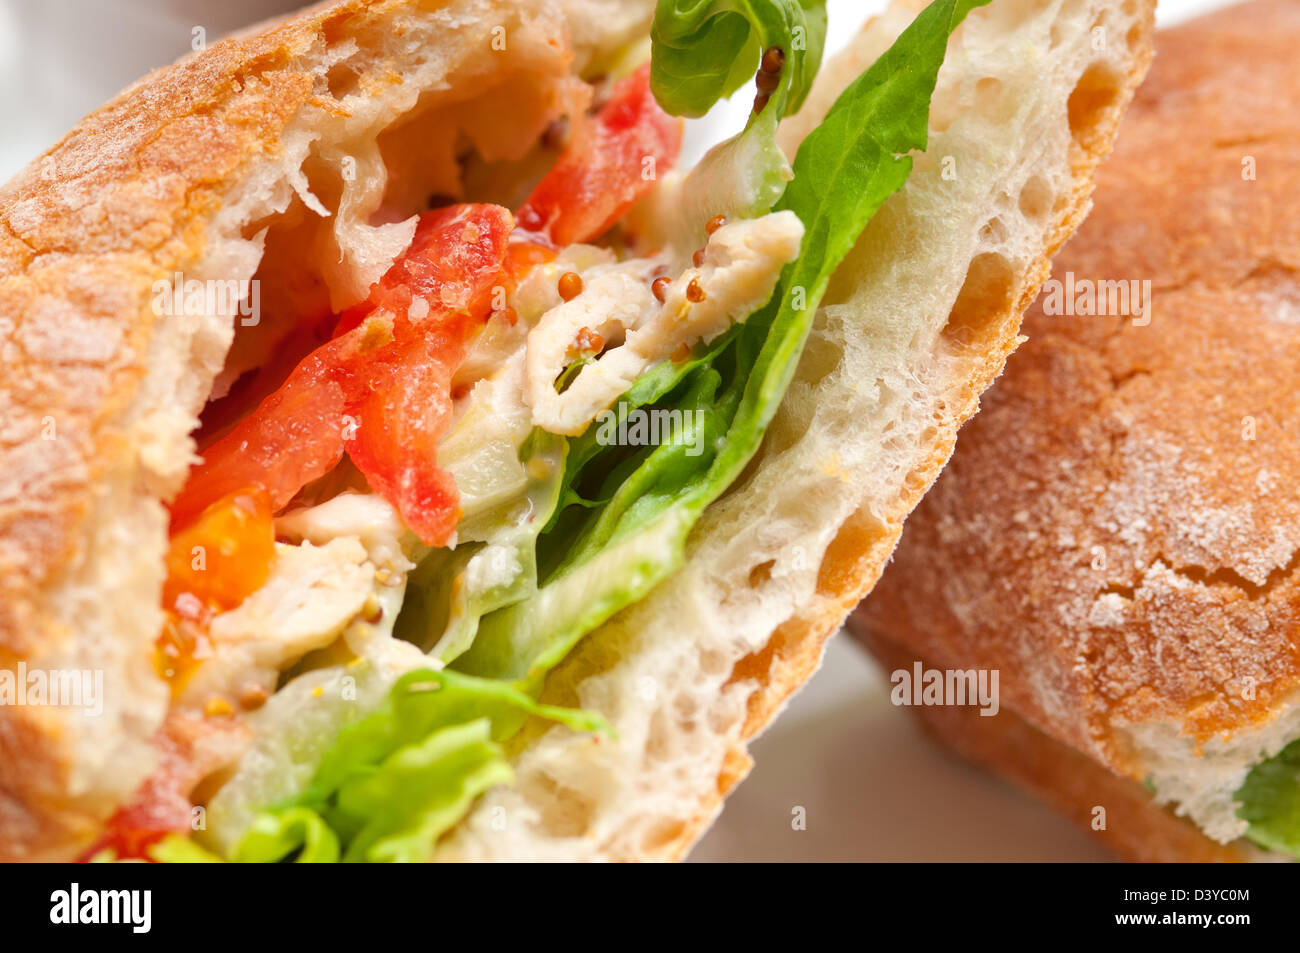 italian ciabatta panini sandwich with chicken and tomato Stock Photo